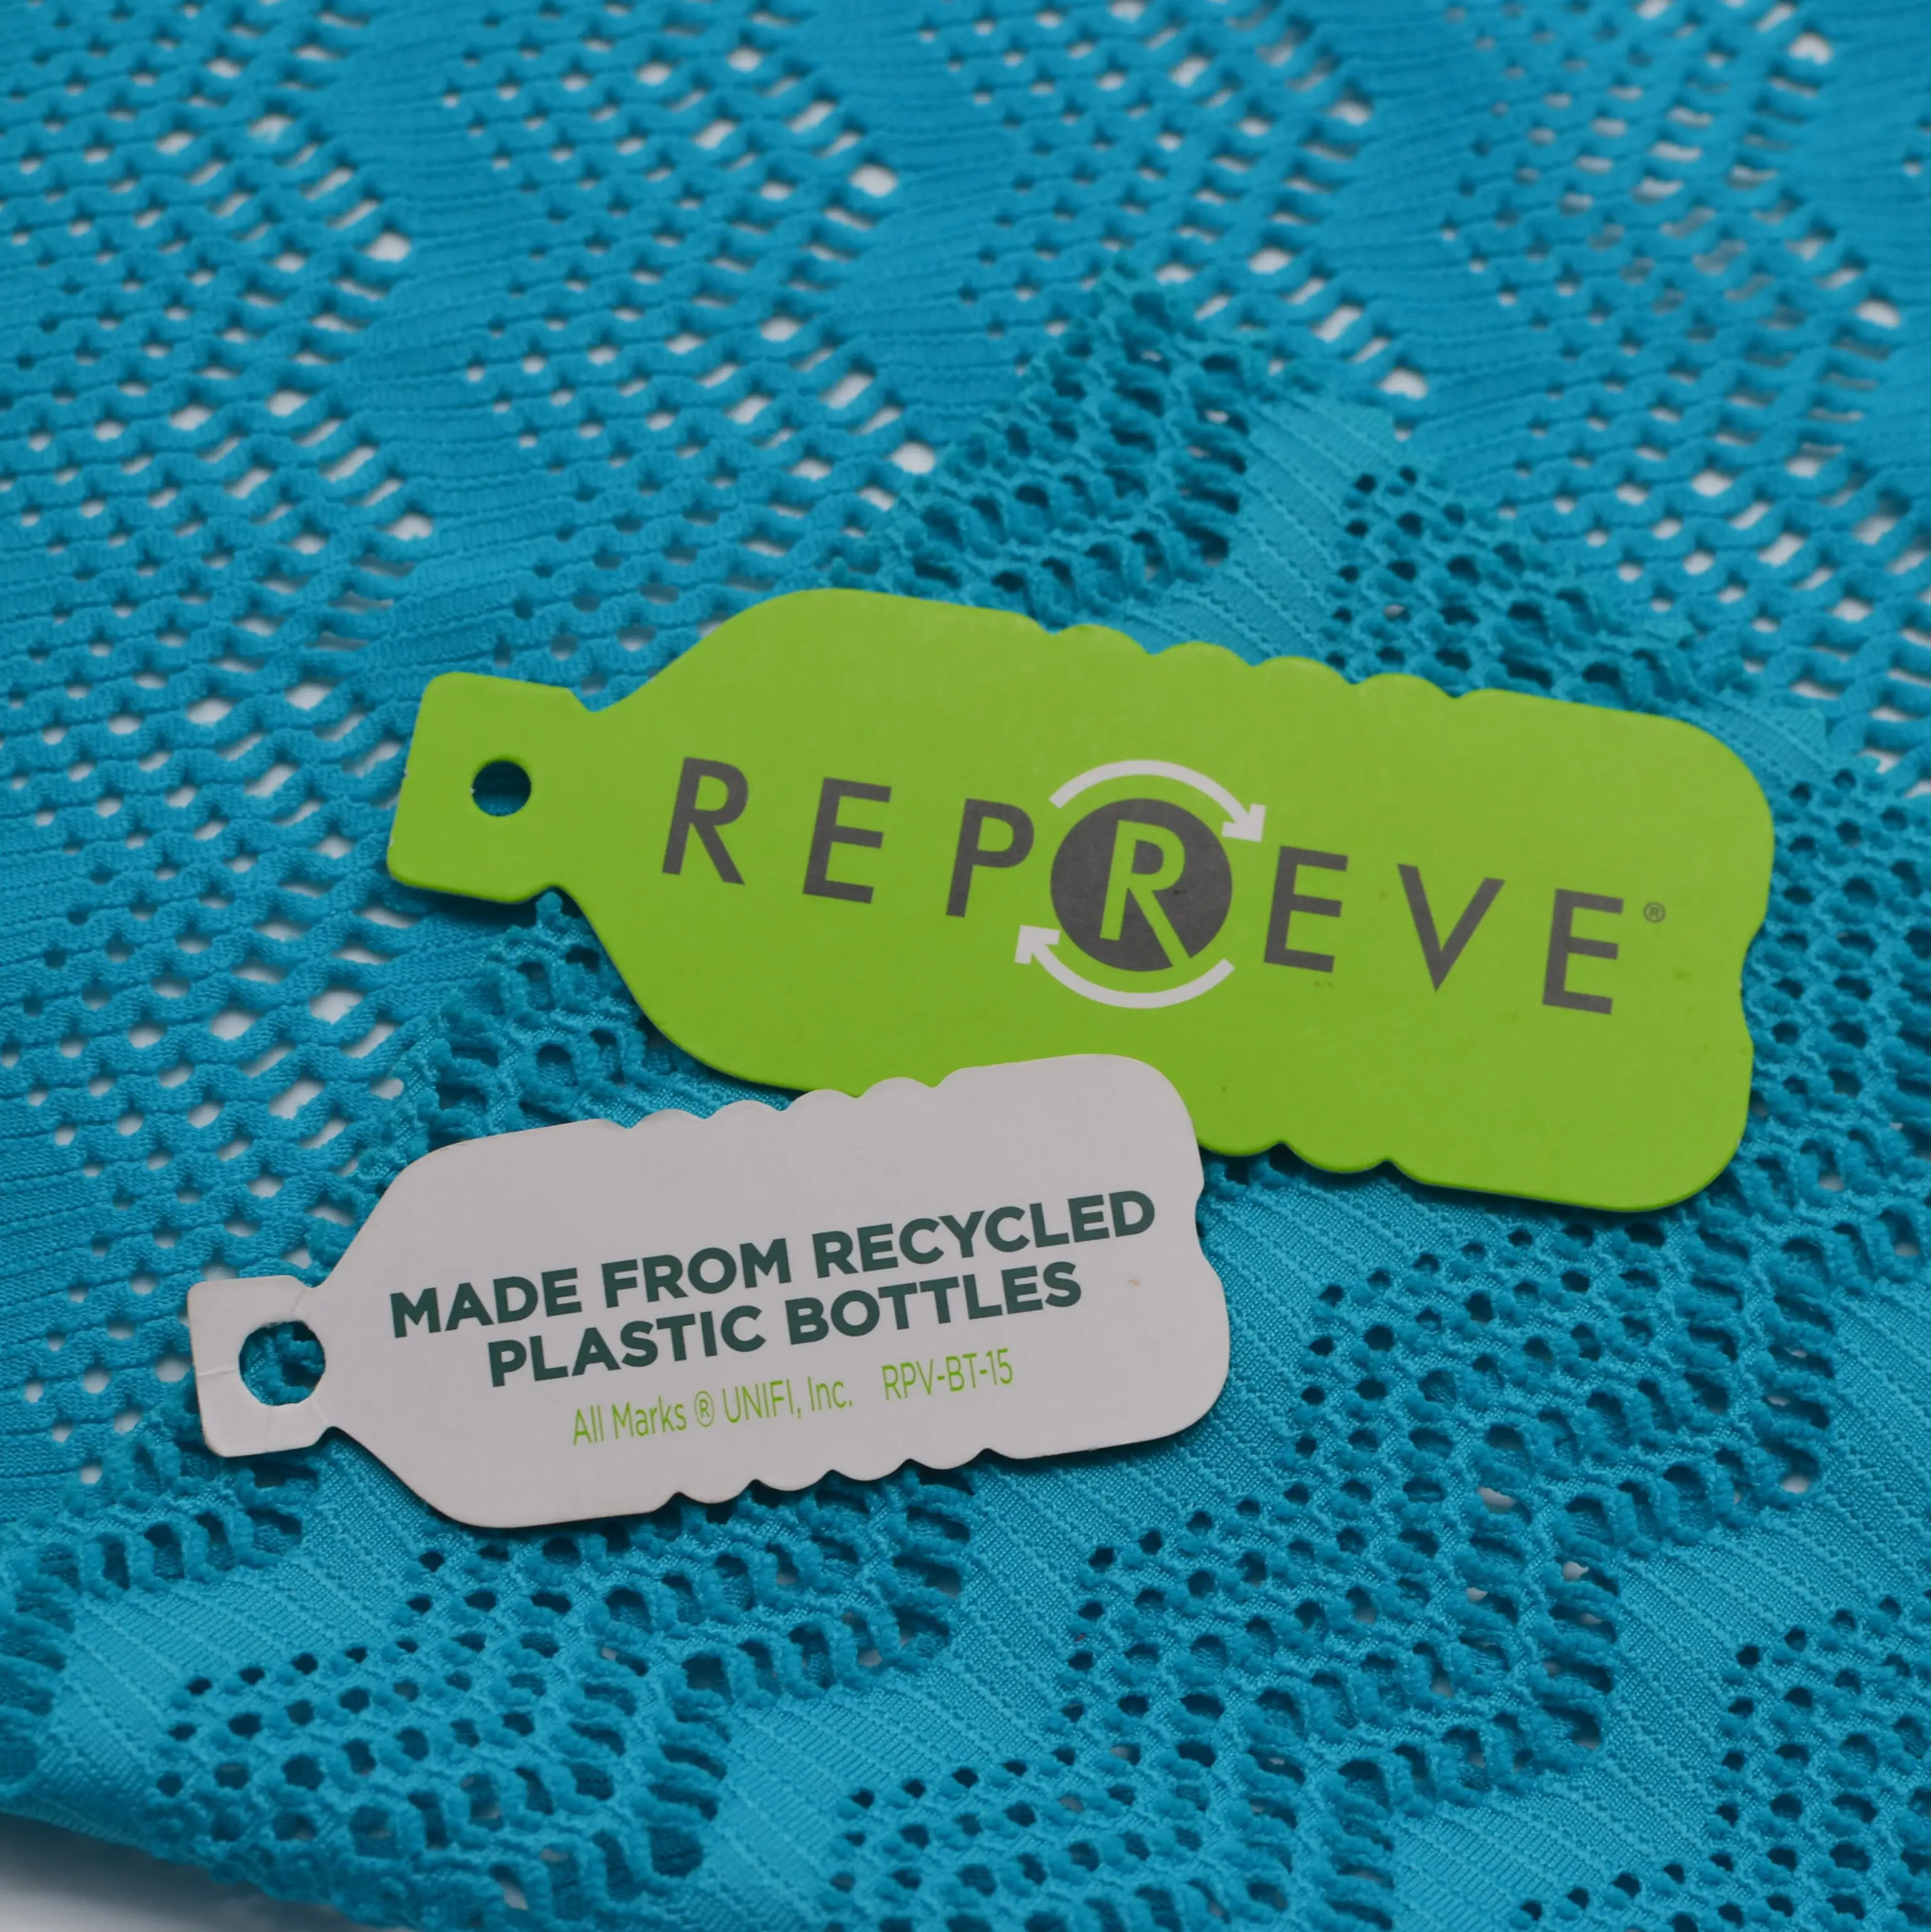 De alta calidad botella de plástico reciclado de la tela del 95 Nylon 5 de malla de Spandex de elastán. Reciclar la tela tejido Jacquard